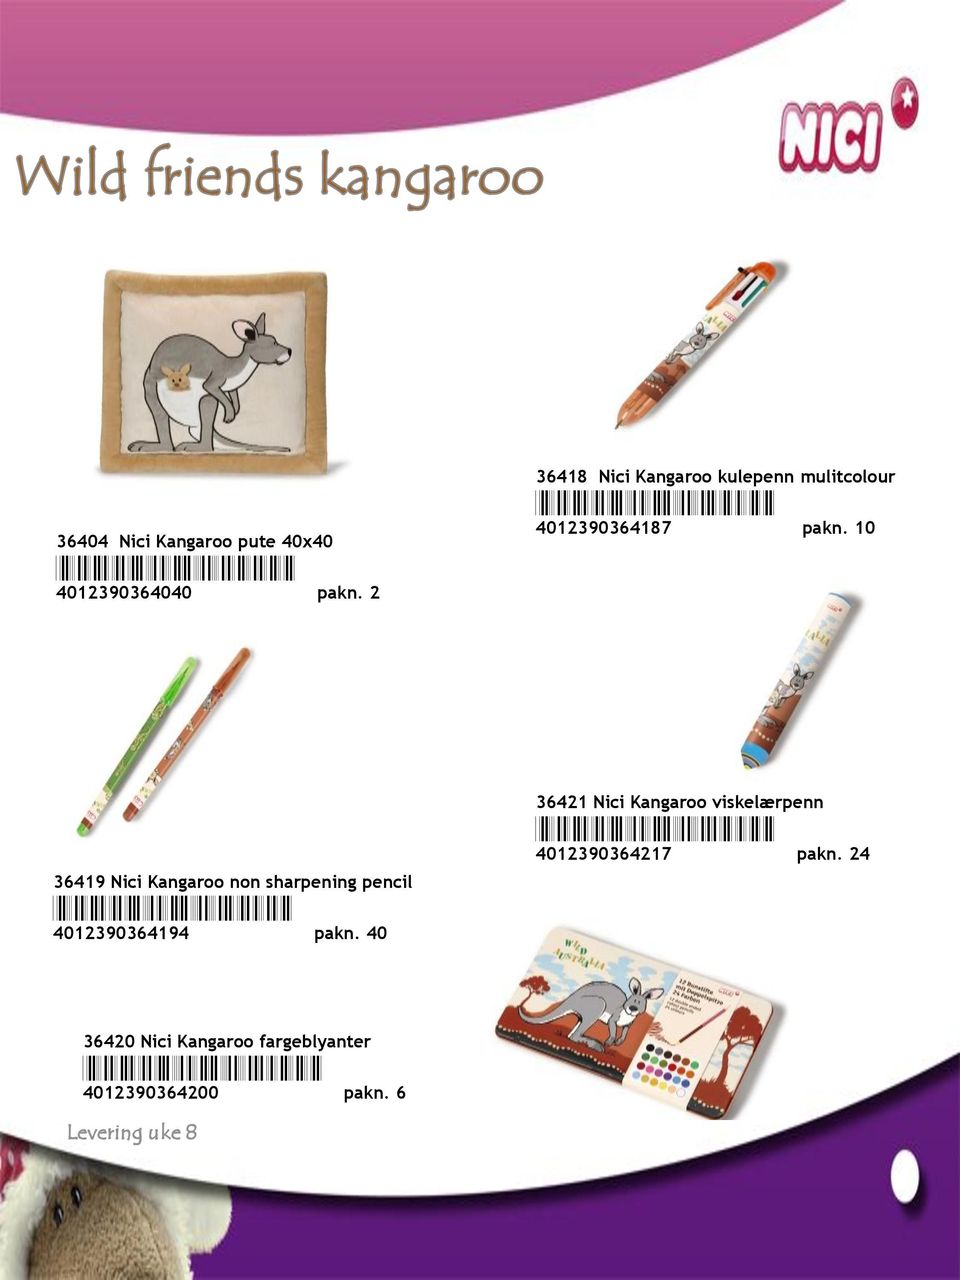 10 36419 Nici Kangaroo non sharpening pencil *4012390364194* 4012390364194 pakn.